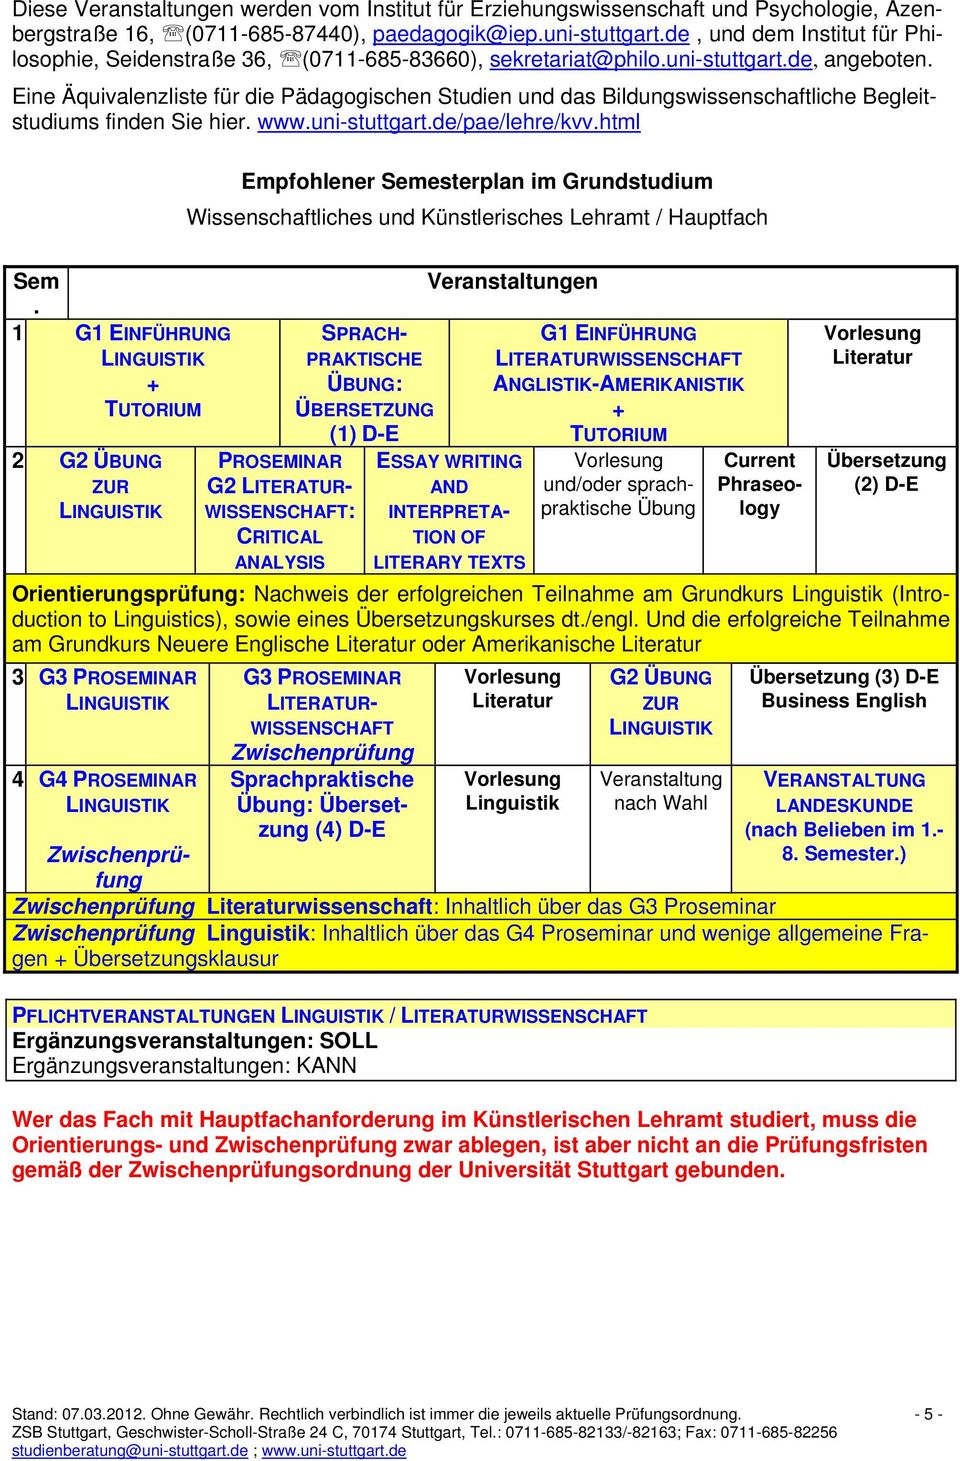 Eine Äquivalenzliste für die Pädagogischen Studien und das Bildungswissenschaftliche Begleitstudiums finden Sie hier. www.uni-stuttgart.de/pae/lehre/kvv.